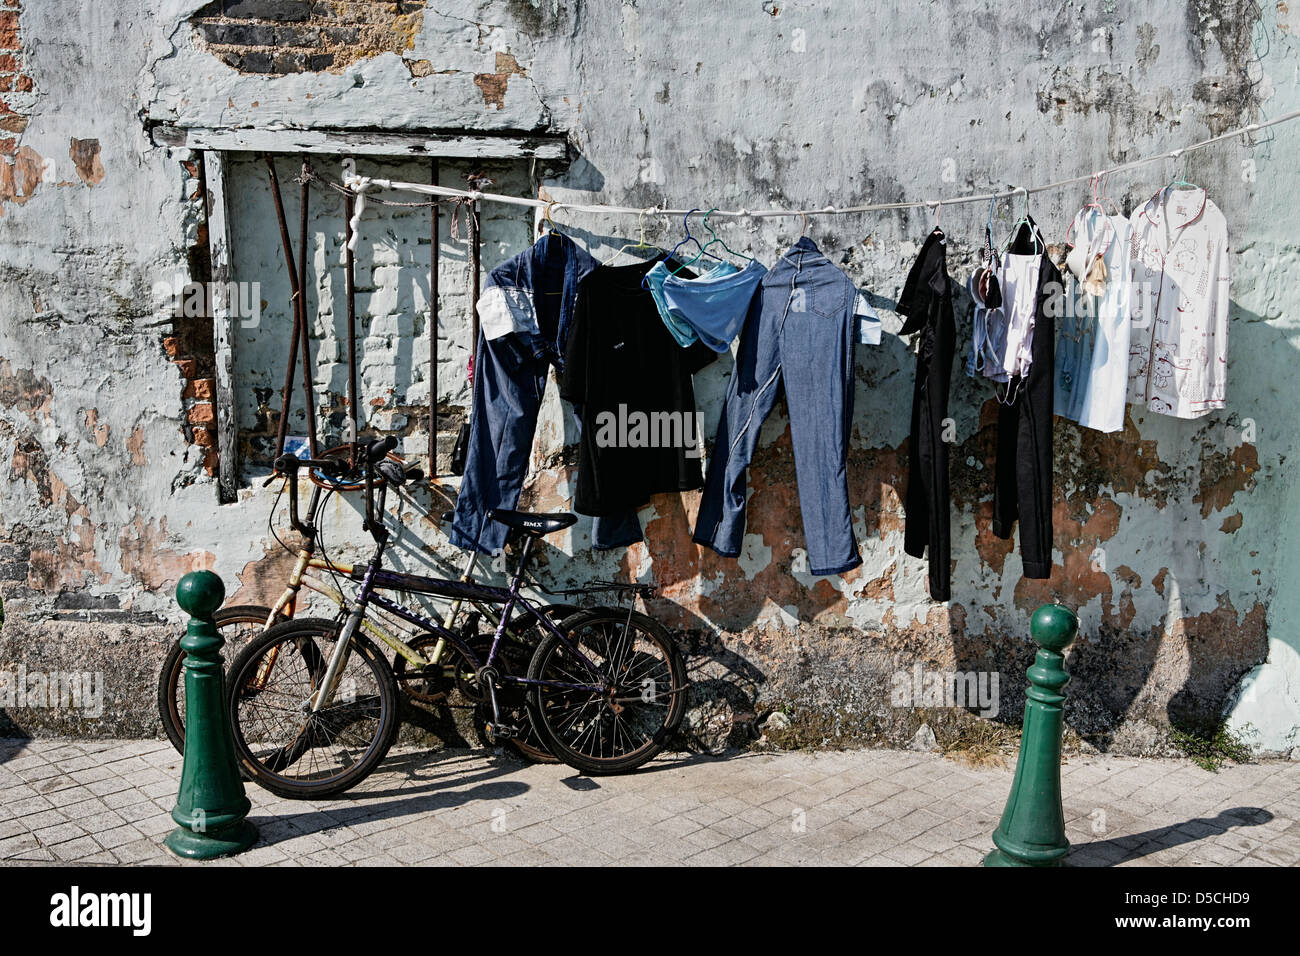 Biancheria stesa ad asciugare accanto alle biciclette in una strada a Macau Foto Stock